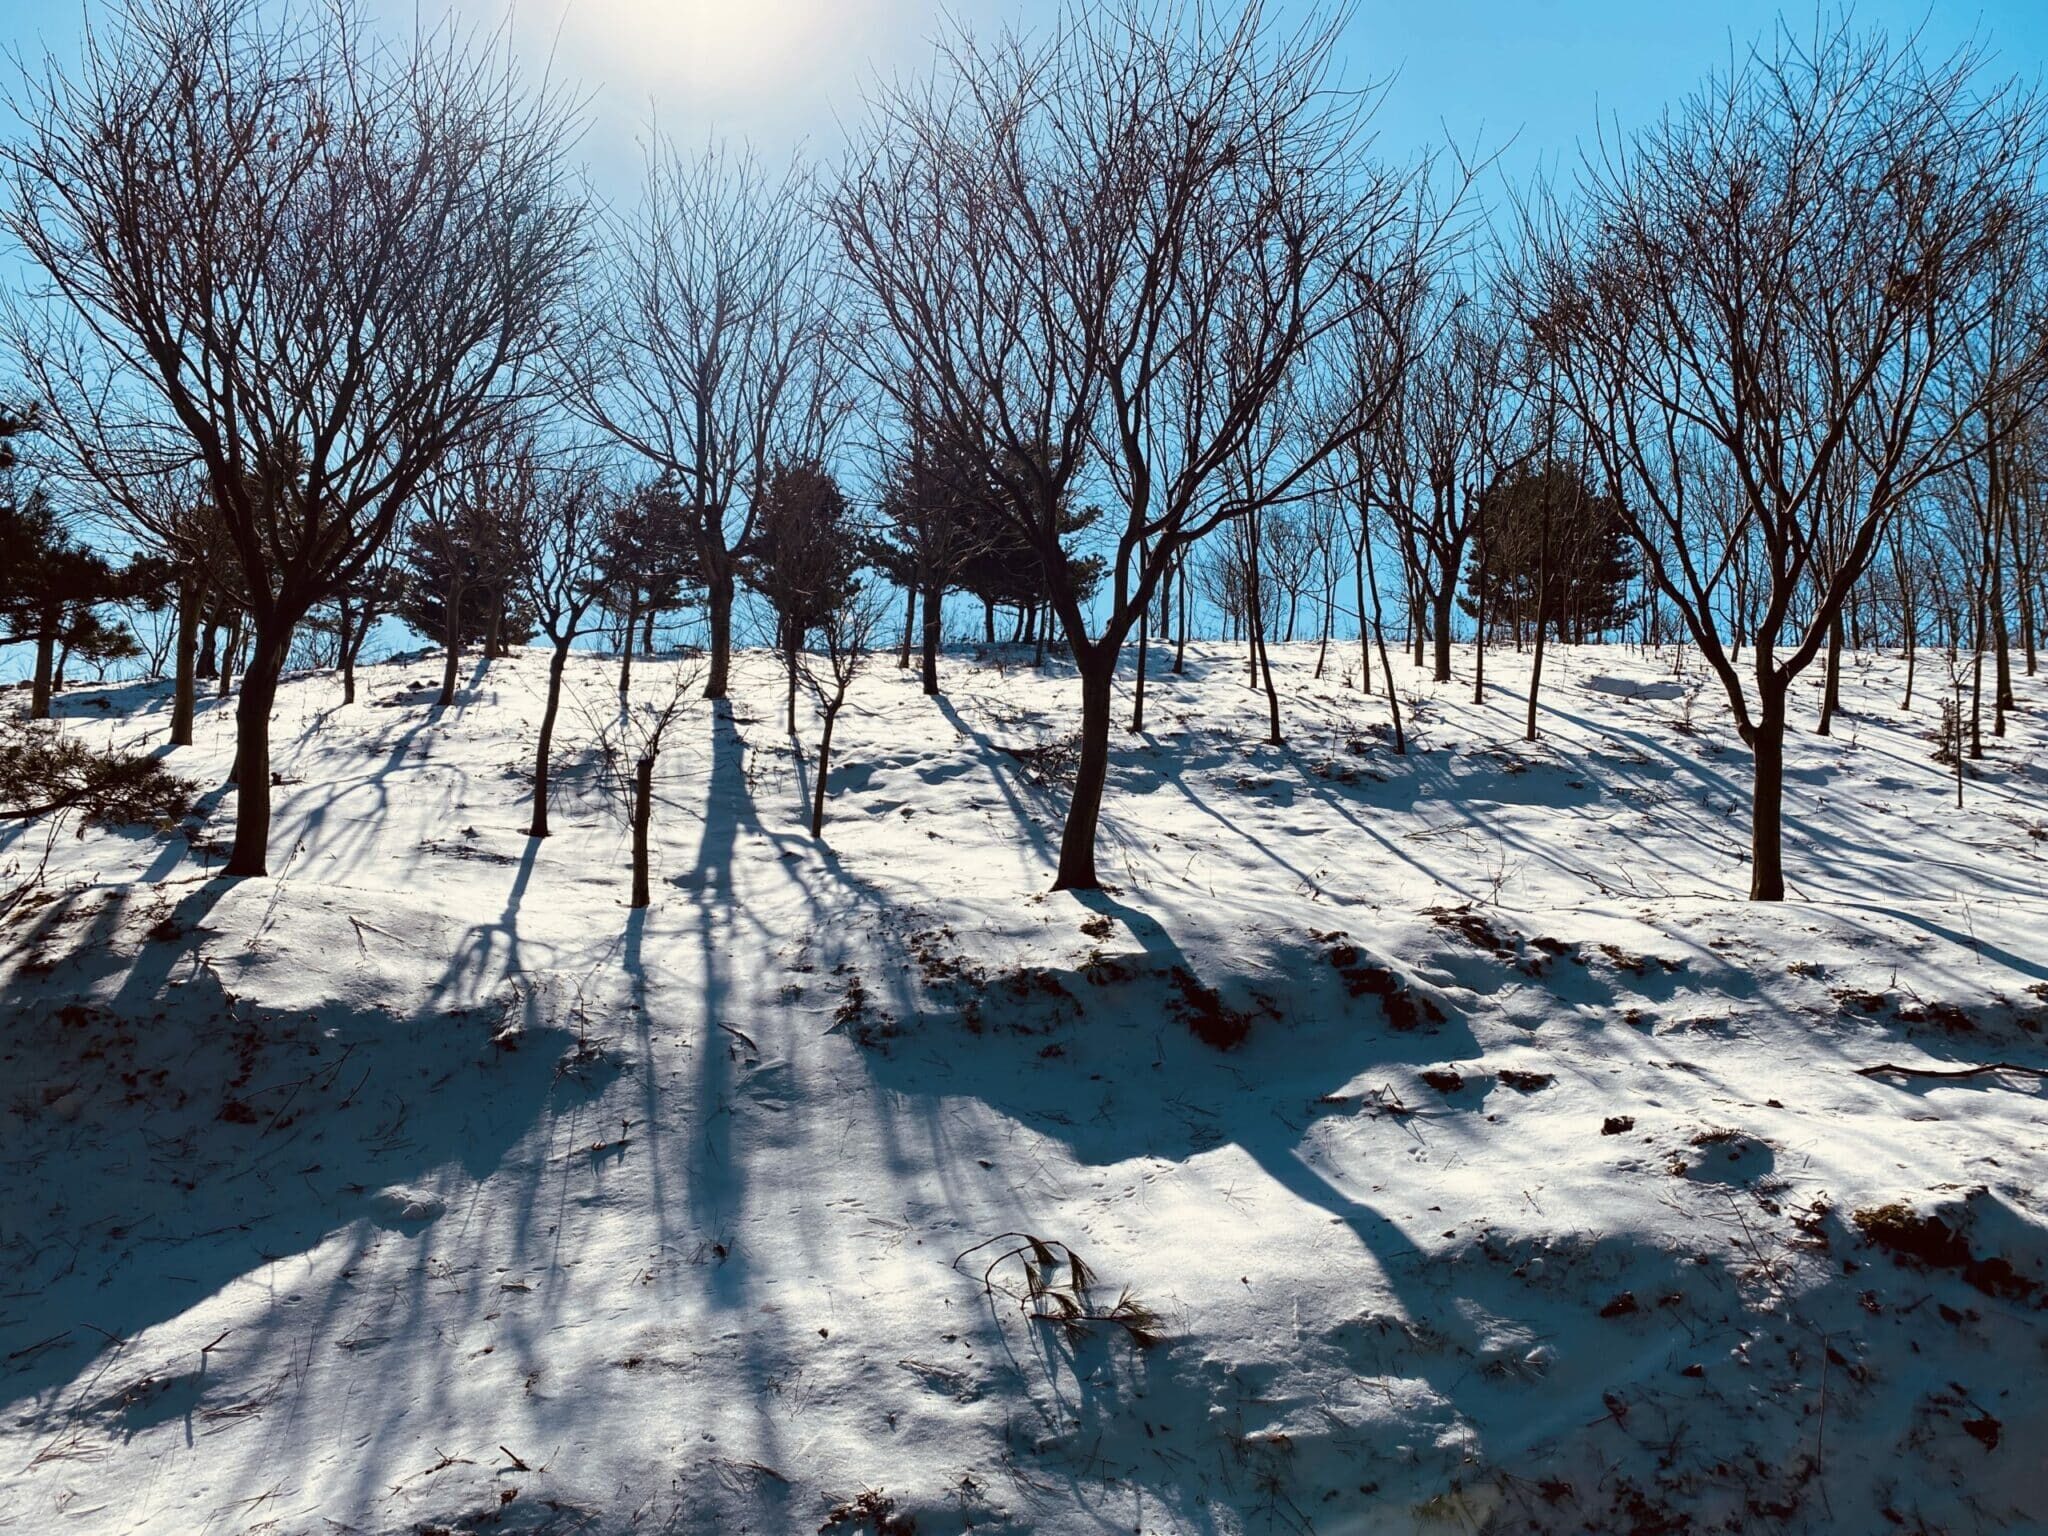 Simingshan in Winter 四明山